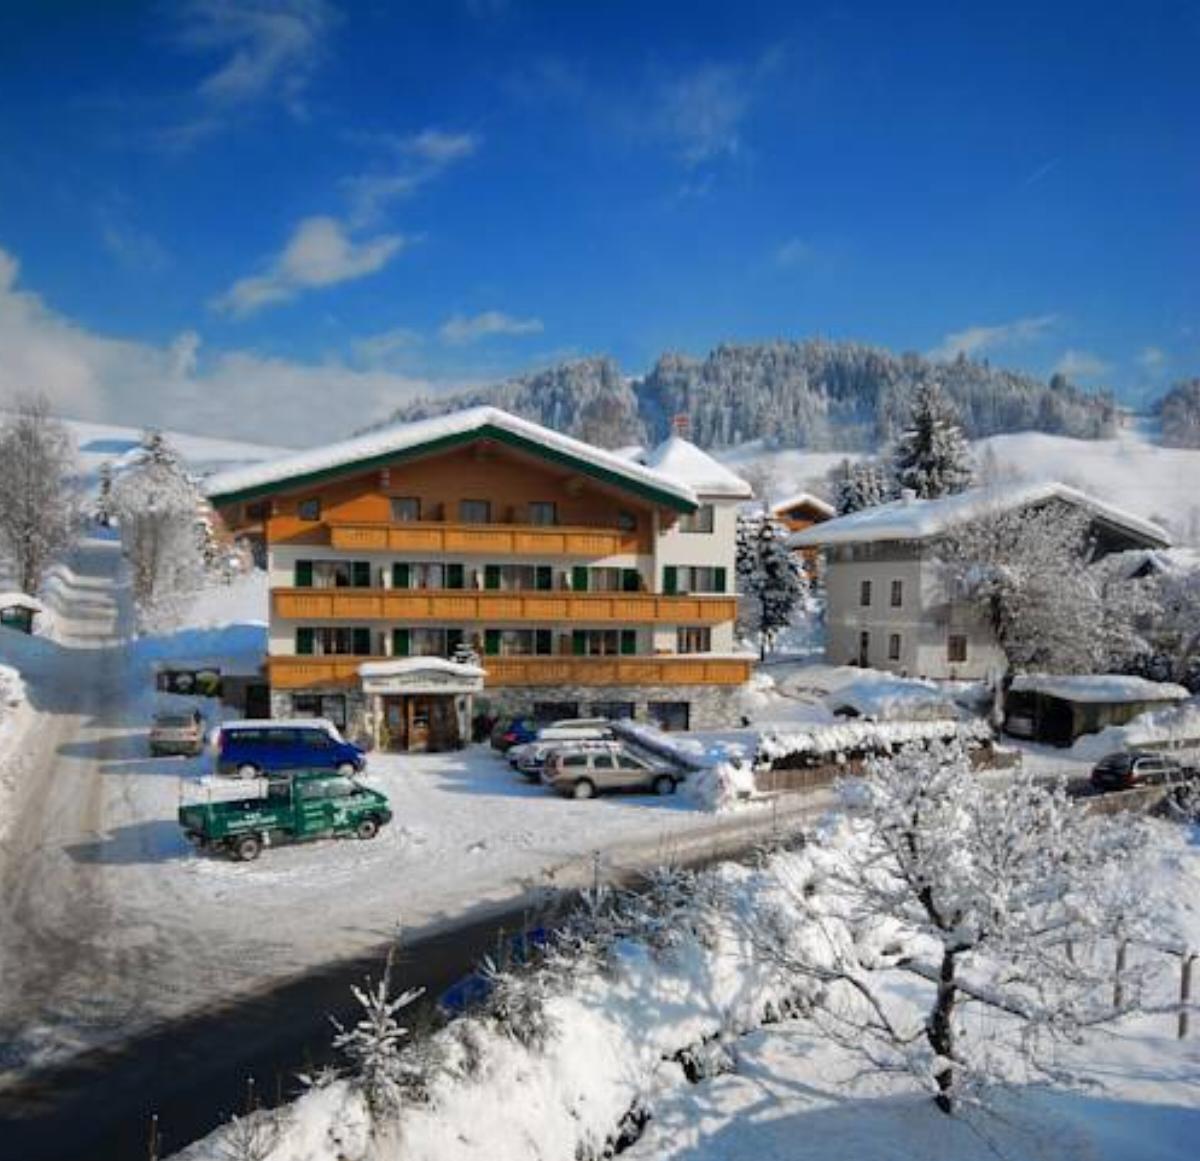 Hotel Garni Alpenland